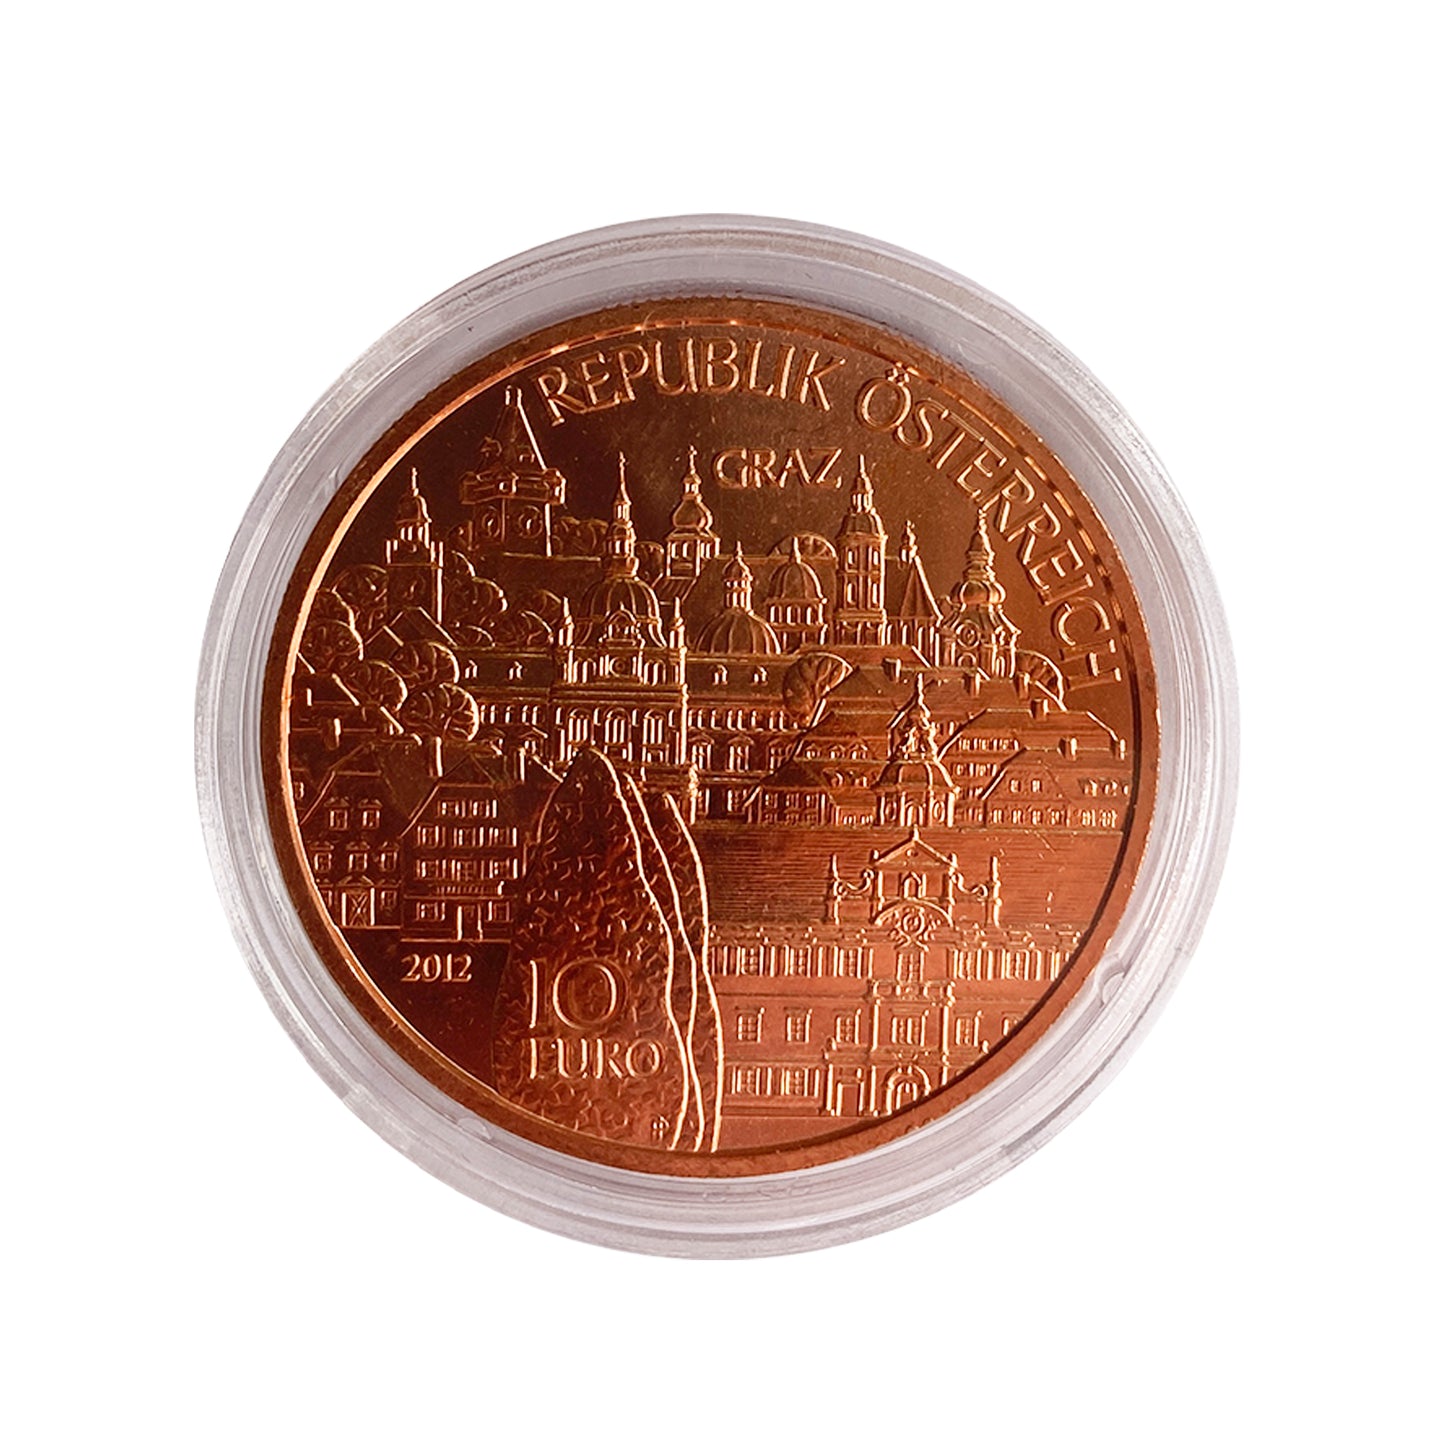 Austria - Moneda 10 euros cobre 2012 - Estado de Estiria